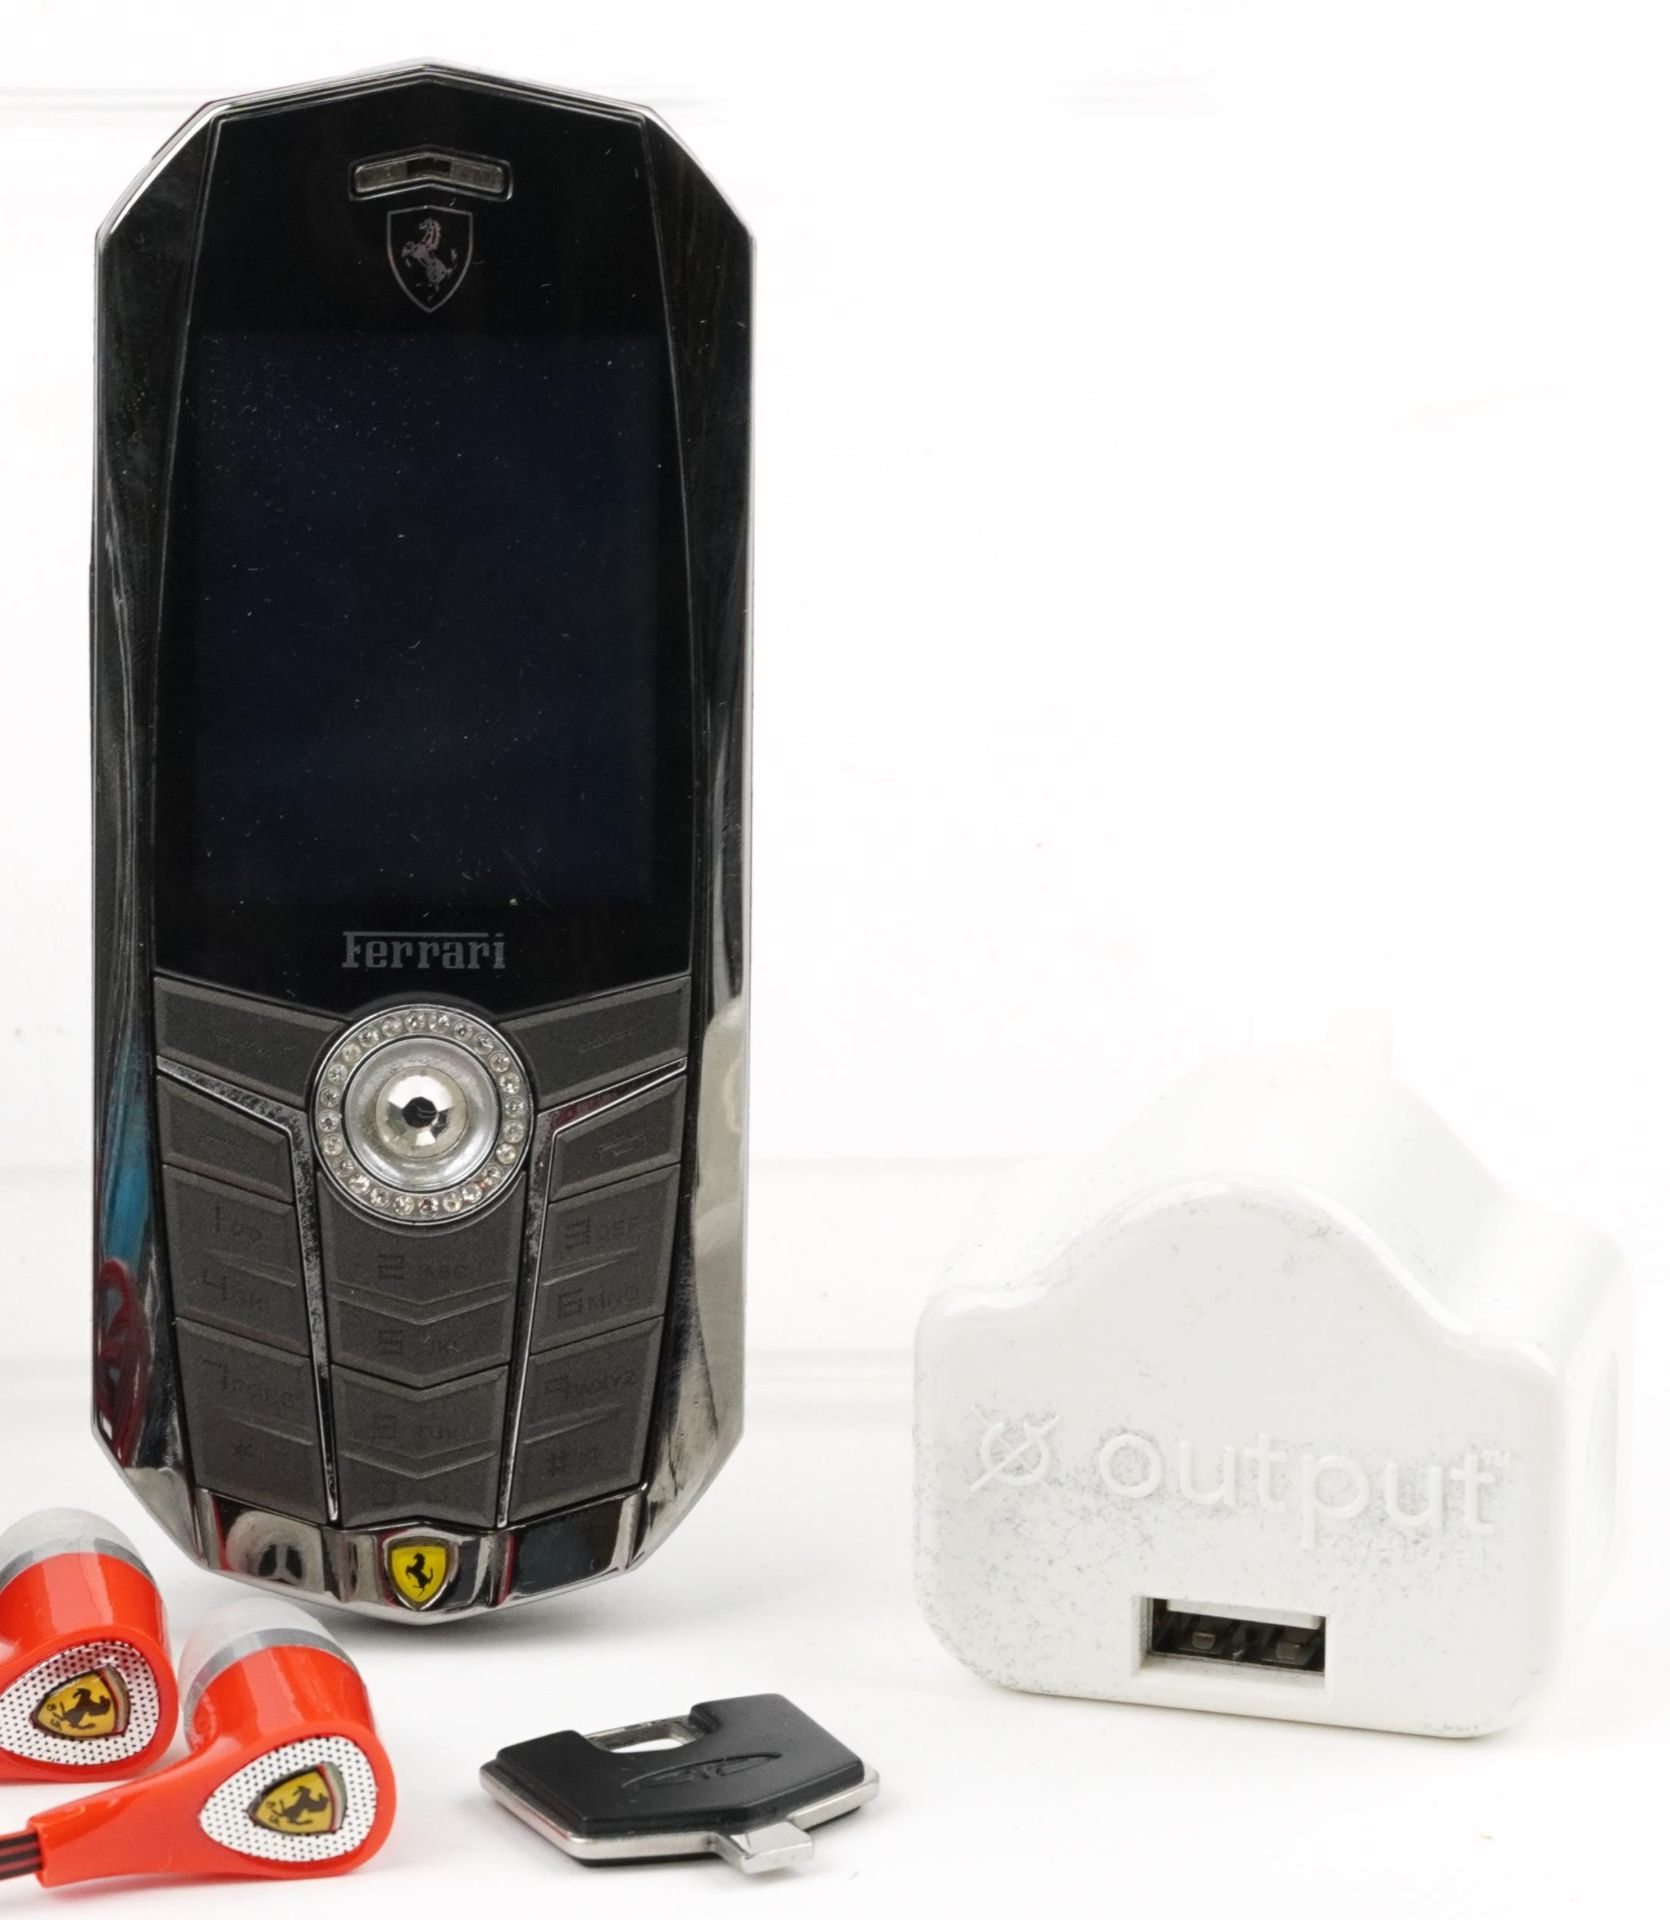 Cased Vertu Ferrari mobile phone and accessories - Bild 3 aus 6